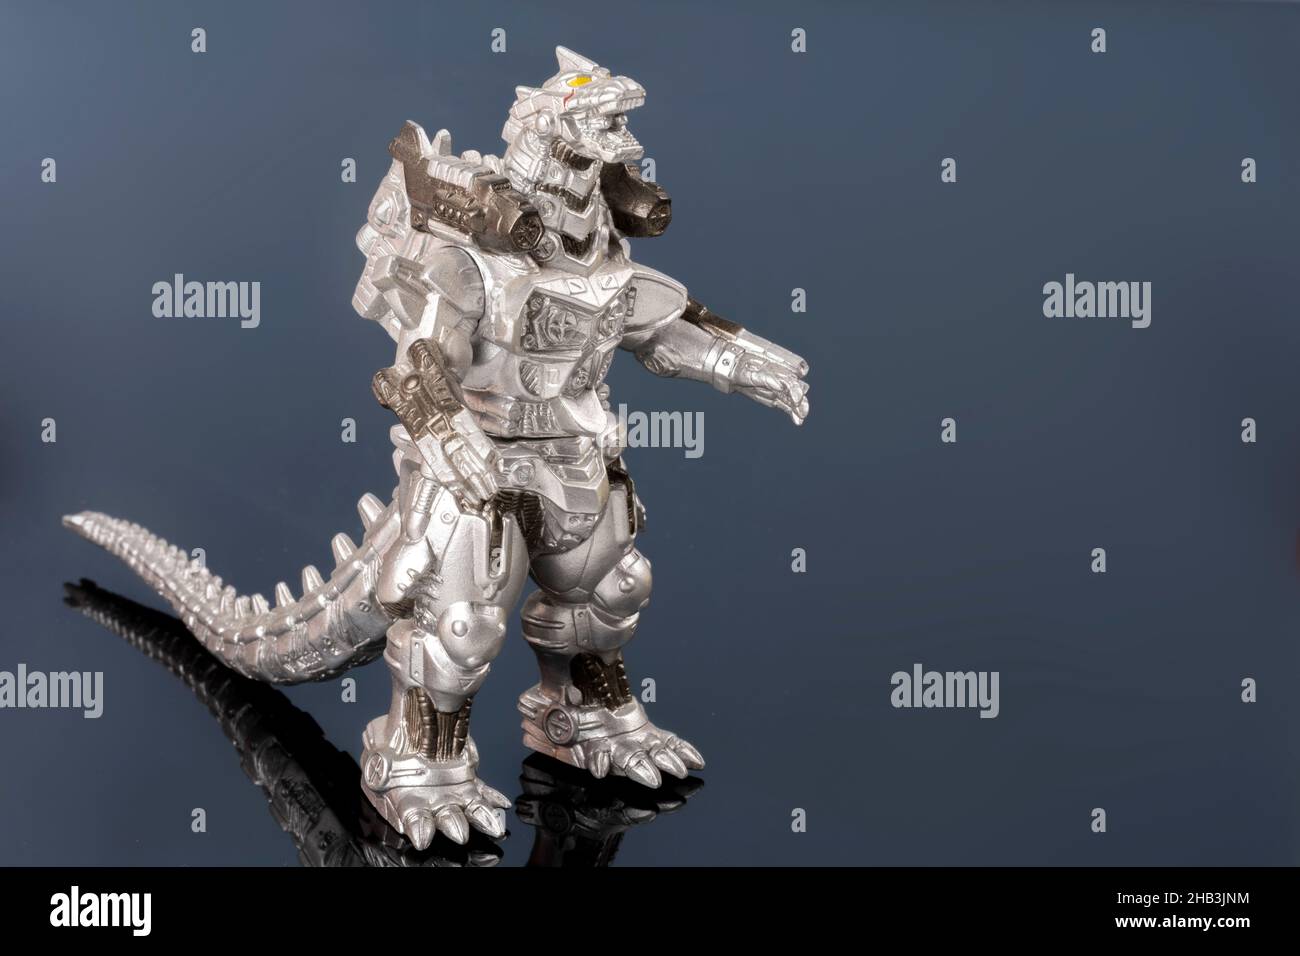 Un giocattolo di lucertola metallizzato d'argento. Leggendario mostro asiatico. Una mascotte gigante. Creatura plastica in dettaglio sulla superficie riflettente. Oggetto culturale Foto Stock